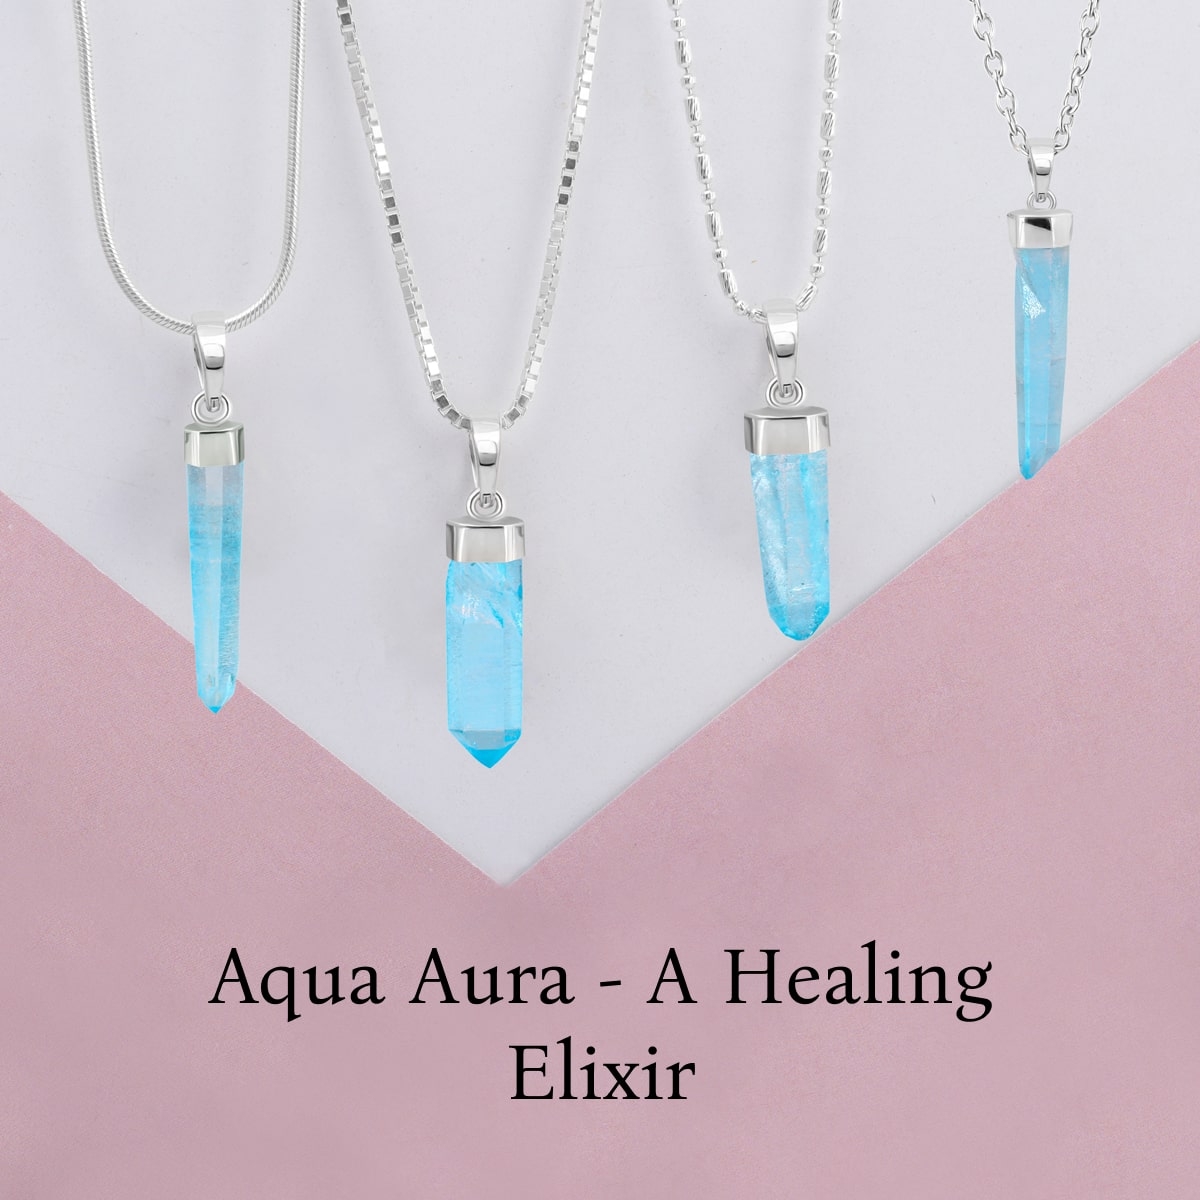 Aqua Aura Healing Properties